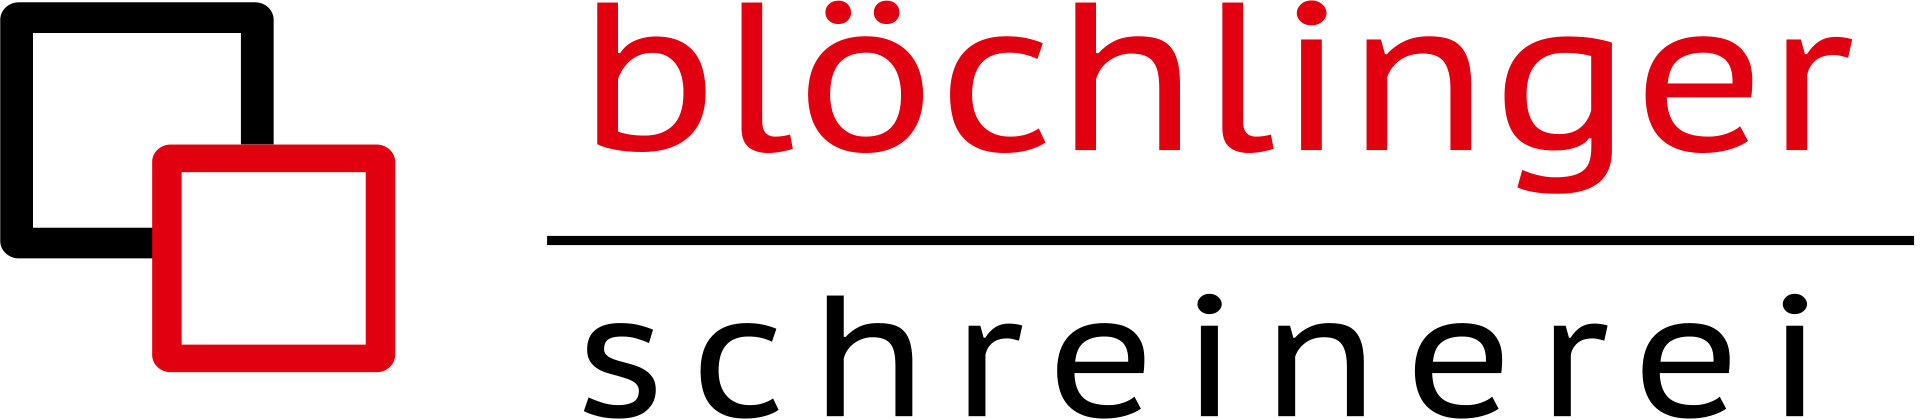 Blöchlinger Schreinerei GmbH